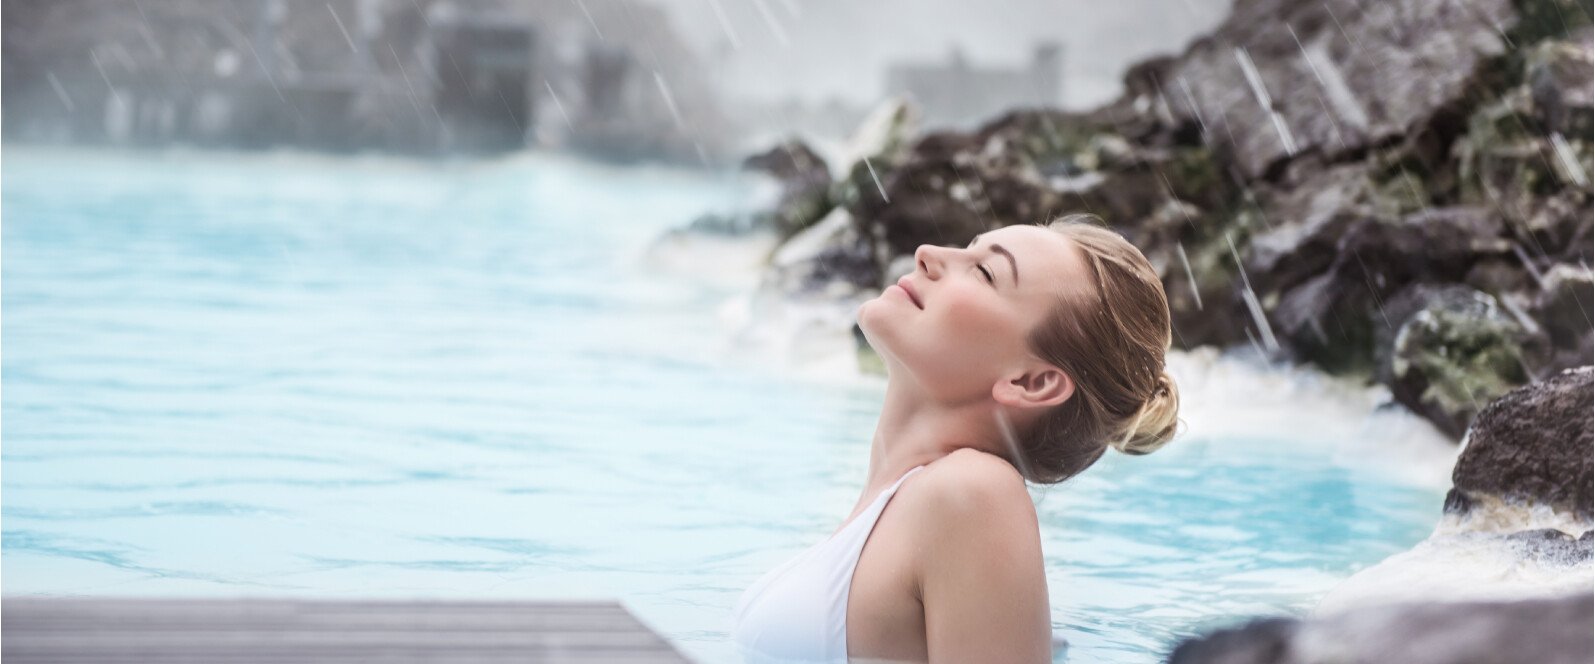 Eine junge Frau badet in einer Thermalquelle und genießt den Moment